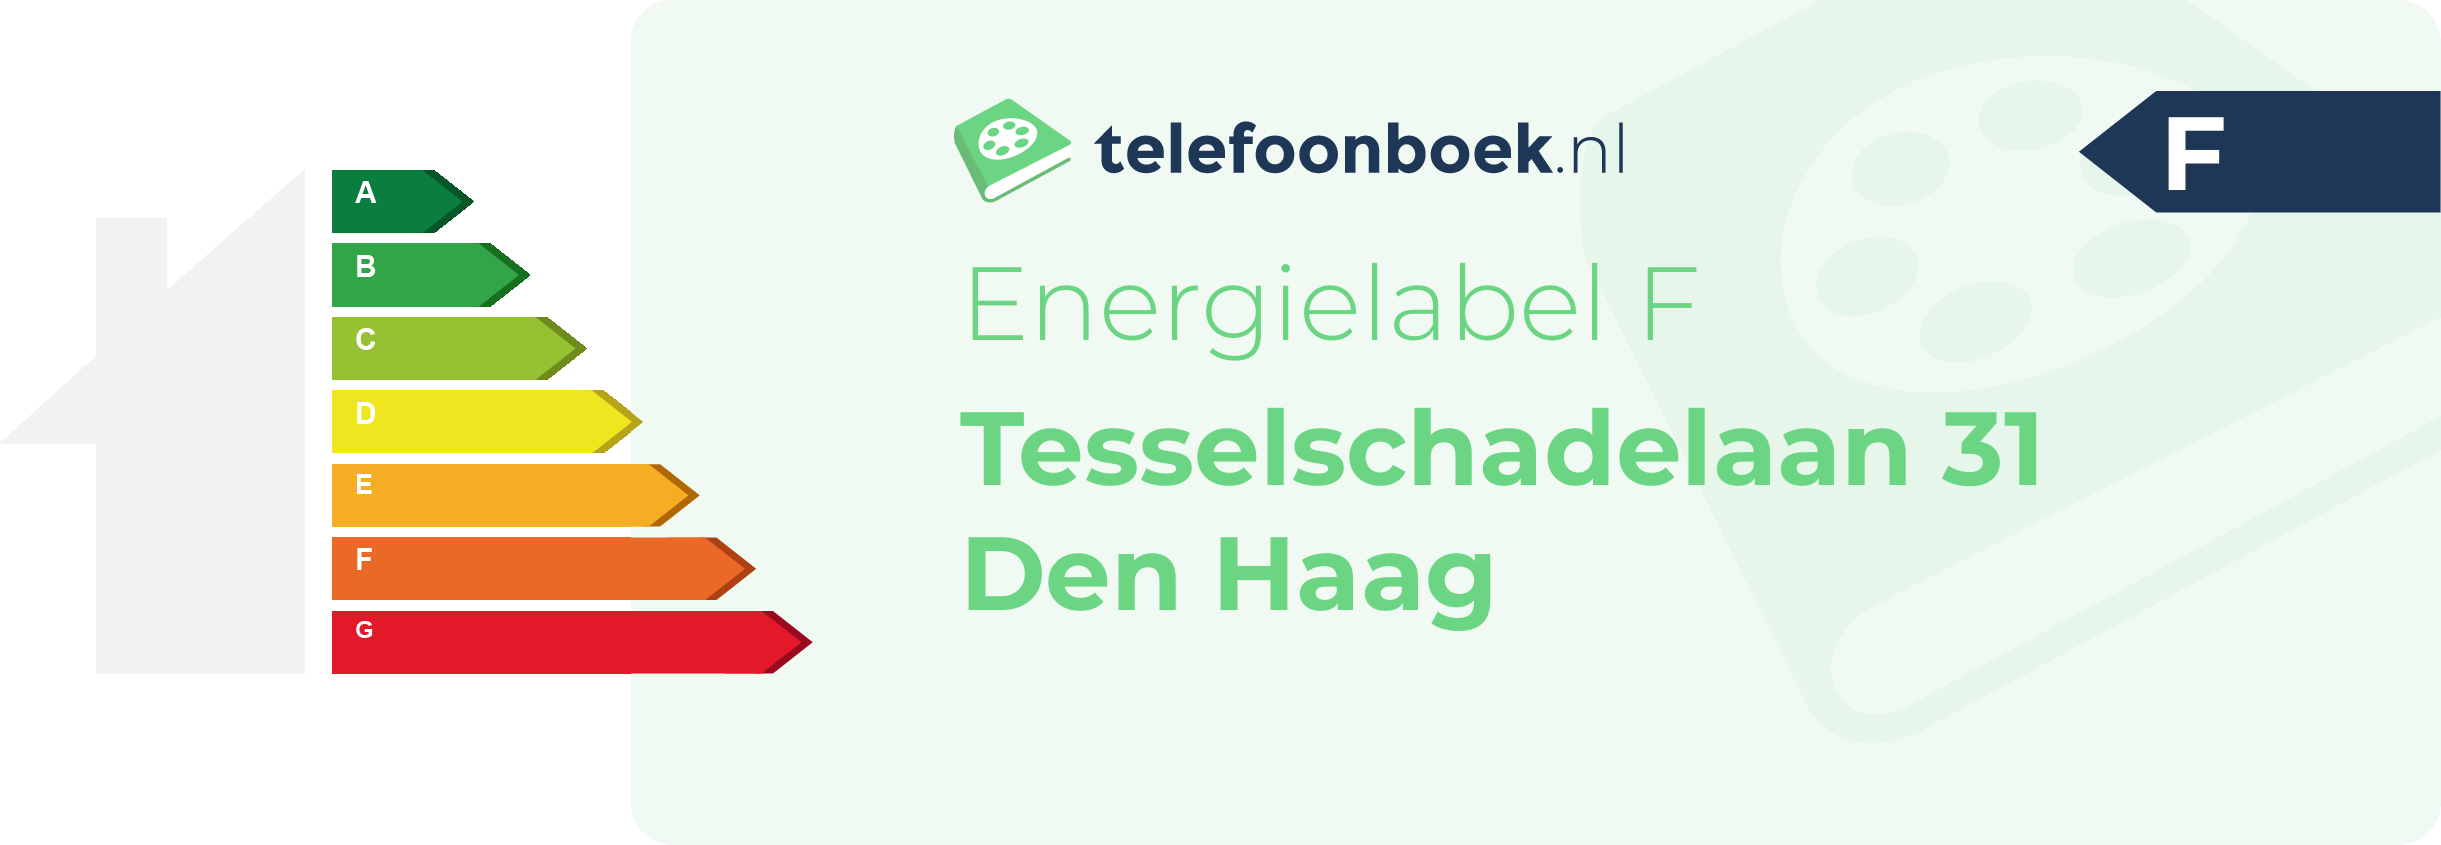 Energielabel Tesselschadelaan 31 Den Haag